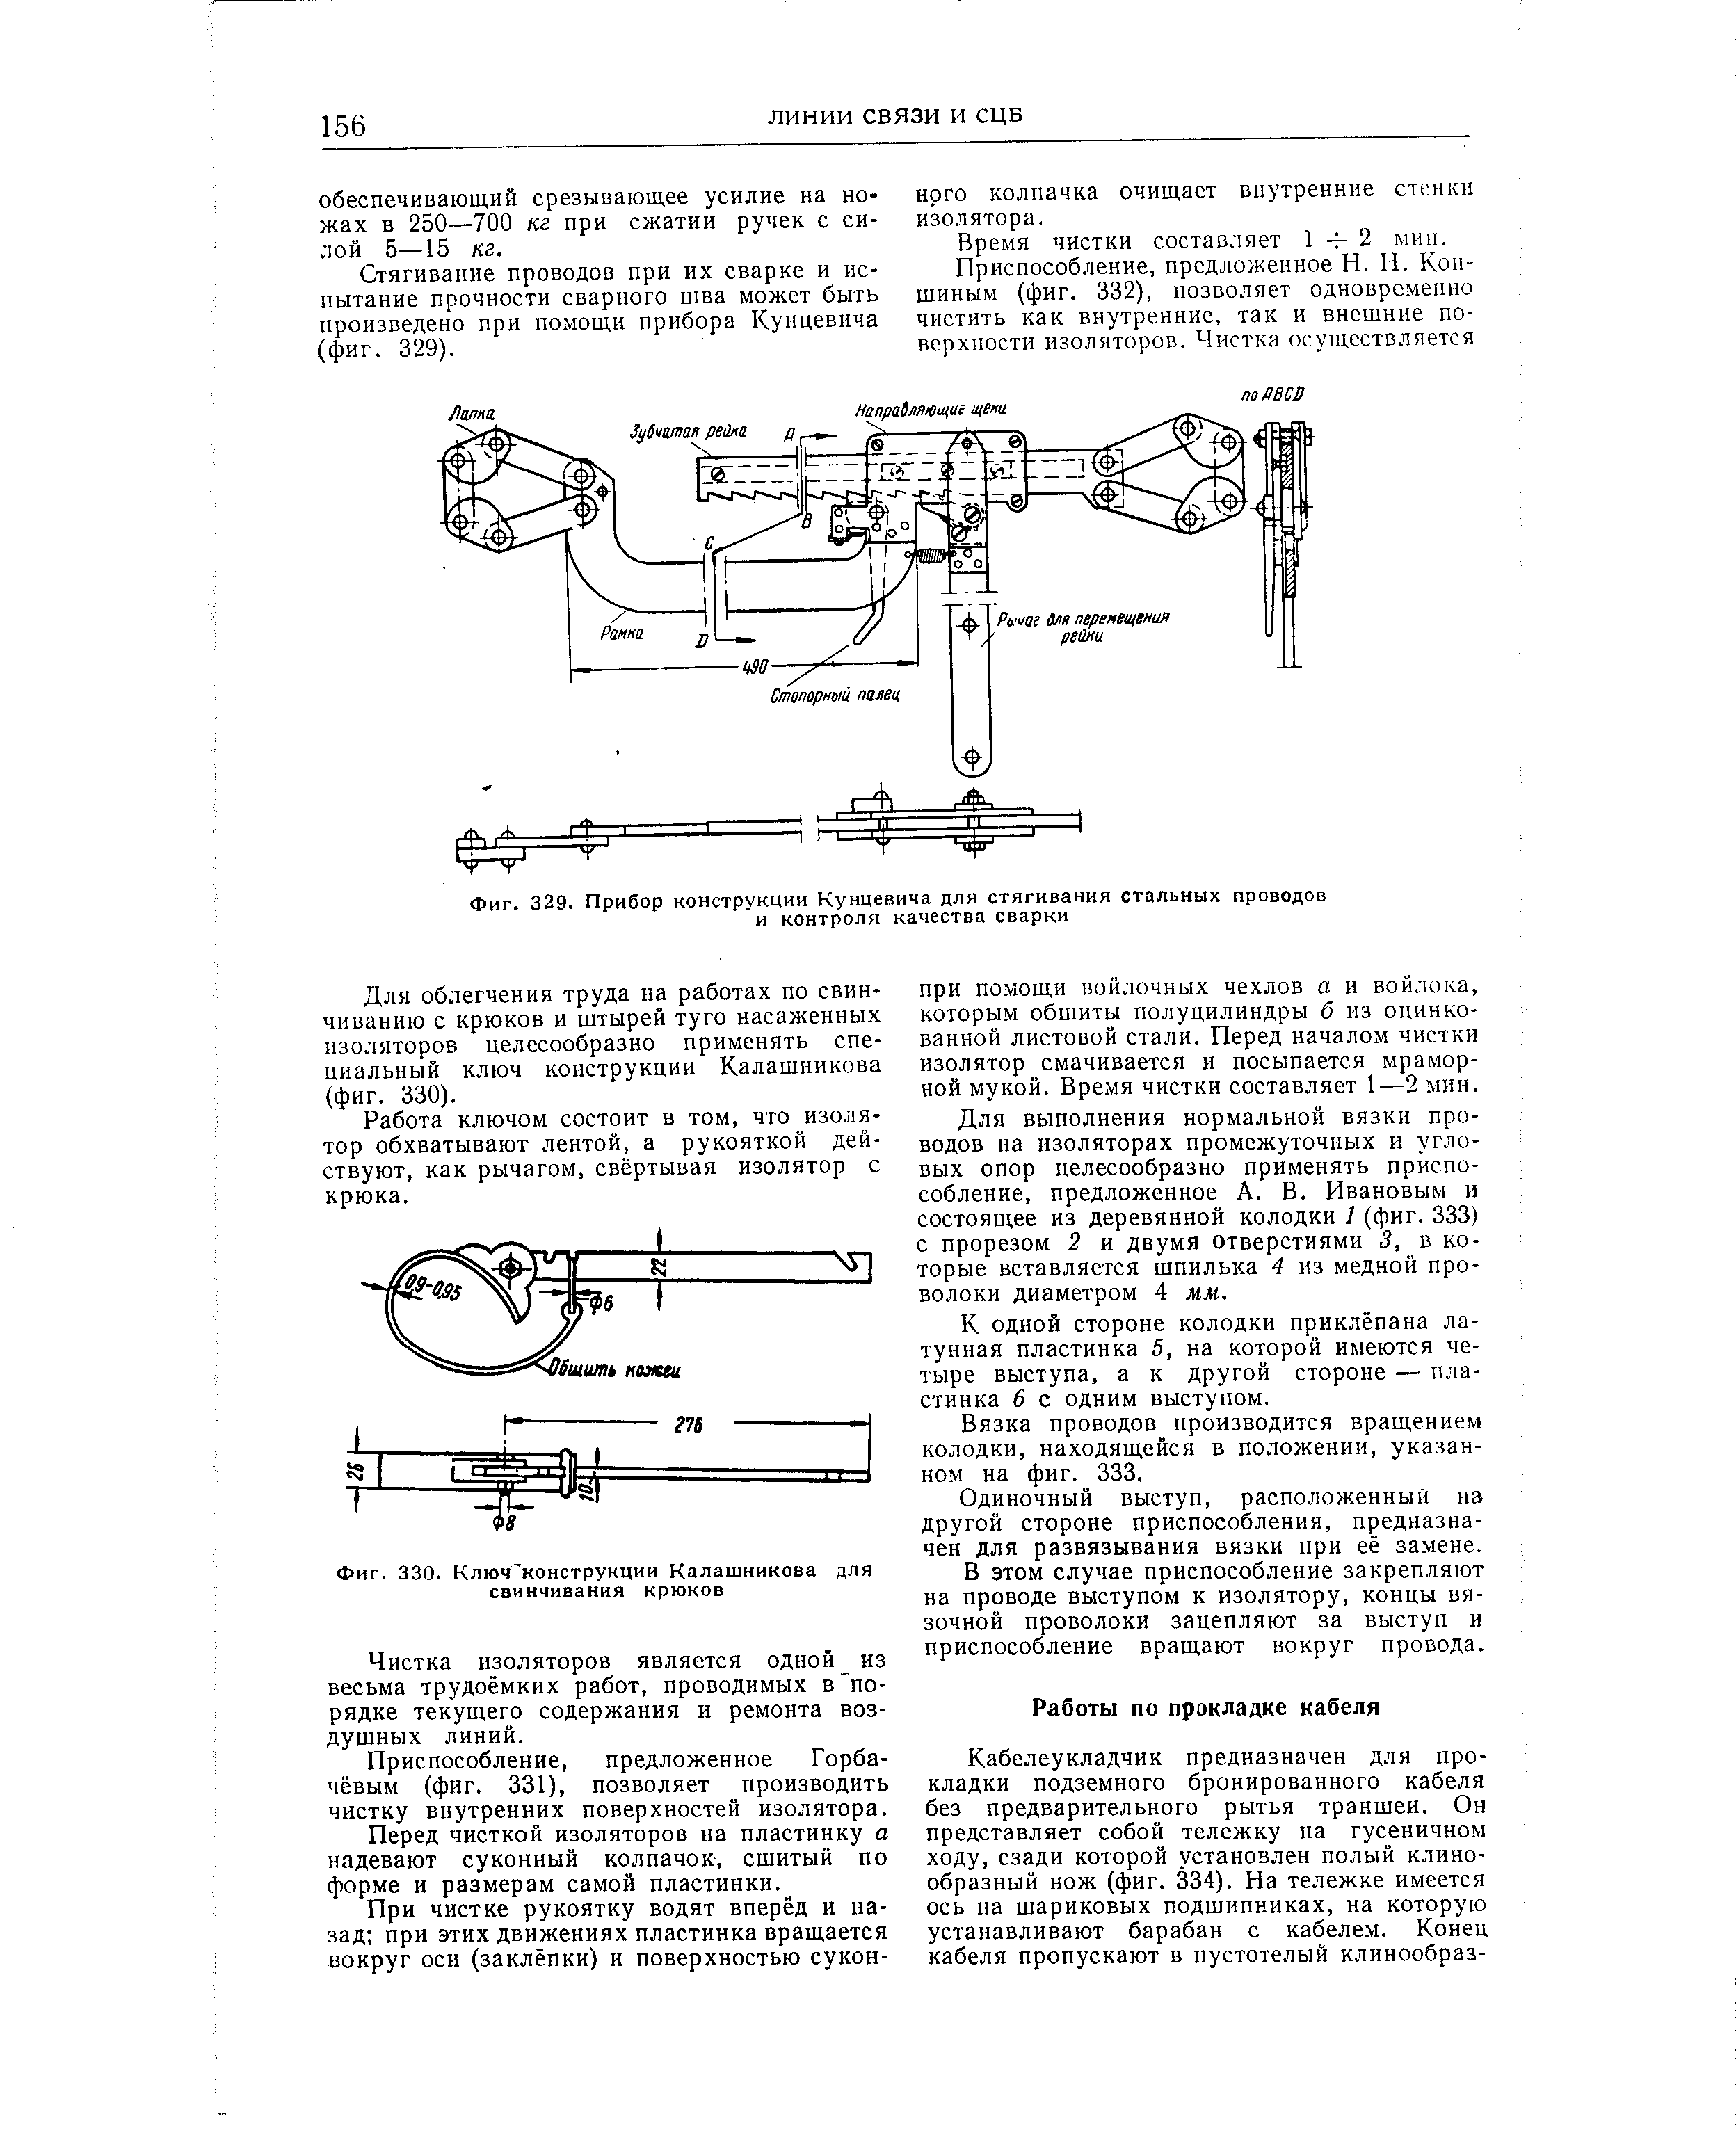 Фиг. 330. Ключ конструкции Калашникова для свинчивания крюков
